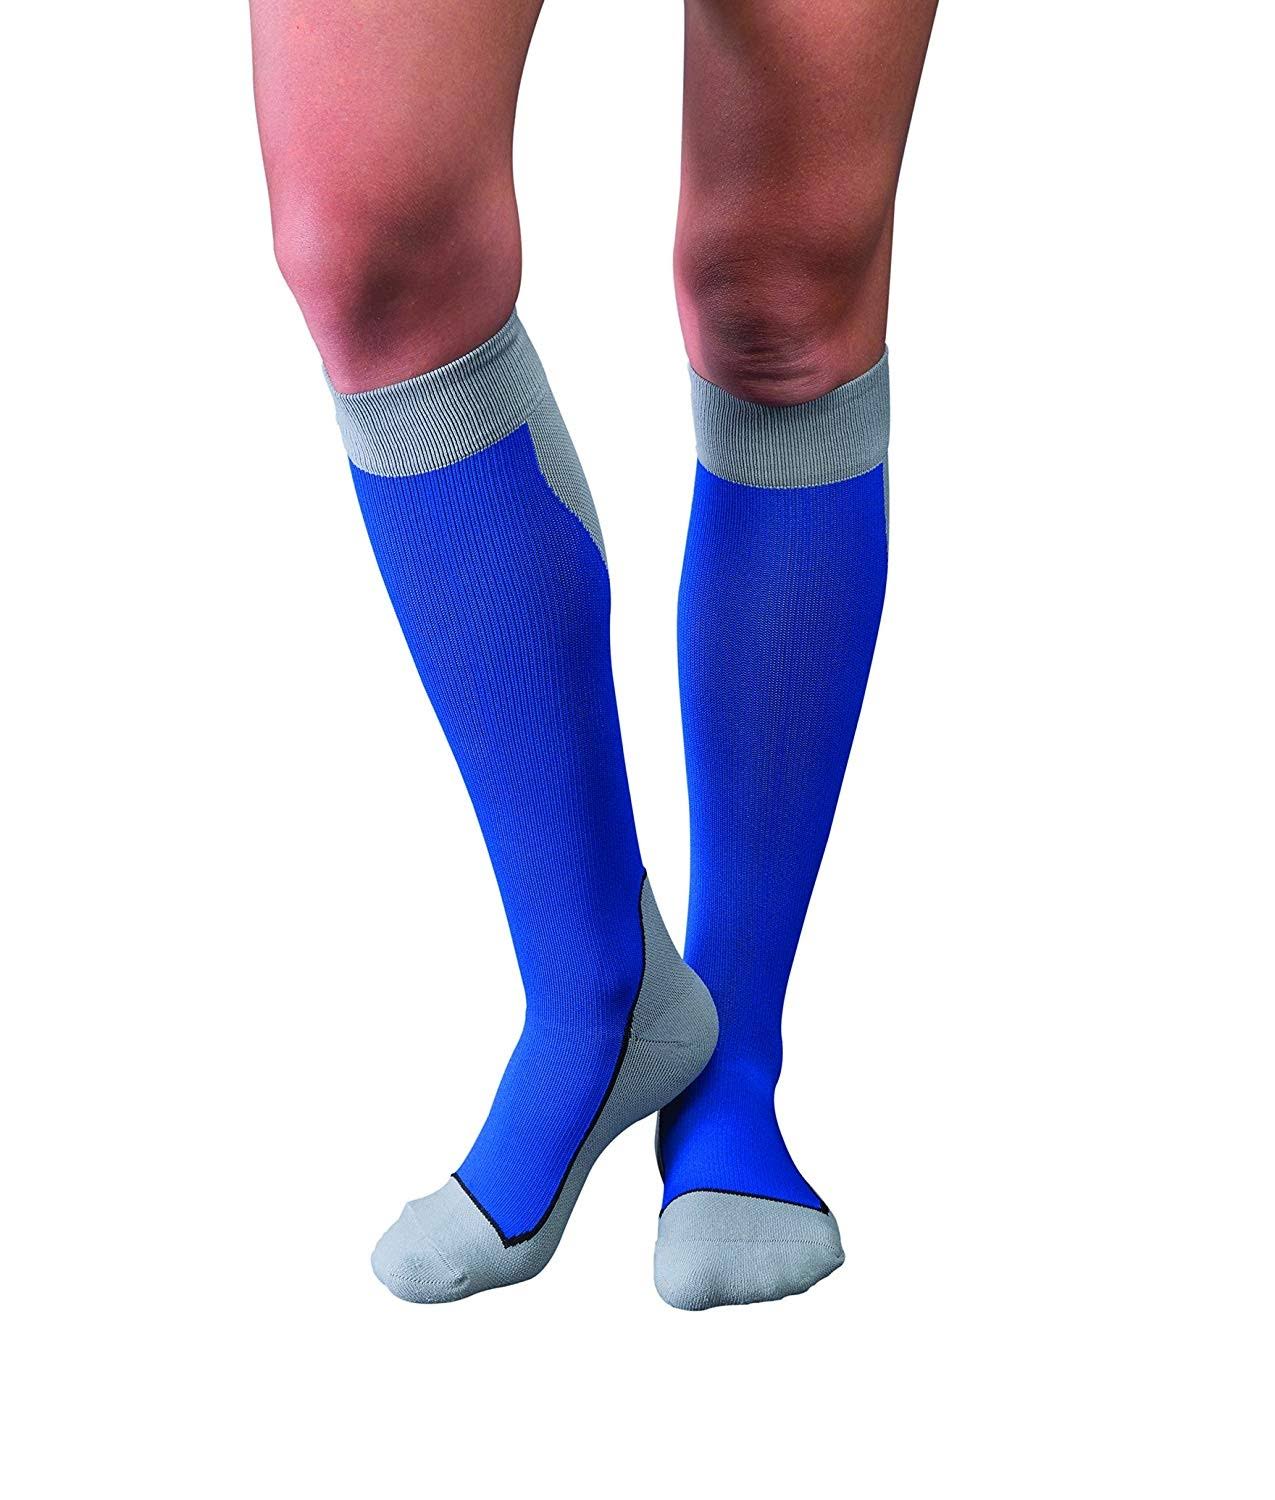 Jobst Sport 20-30 mmHg Knee High Socks / Large / blue/gray